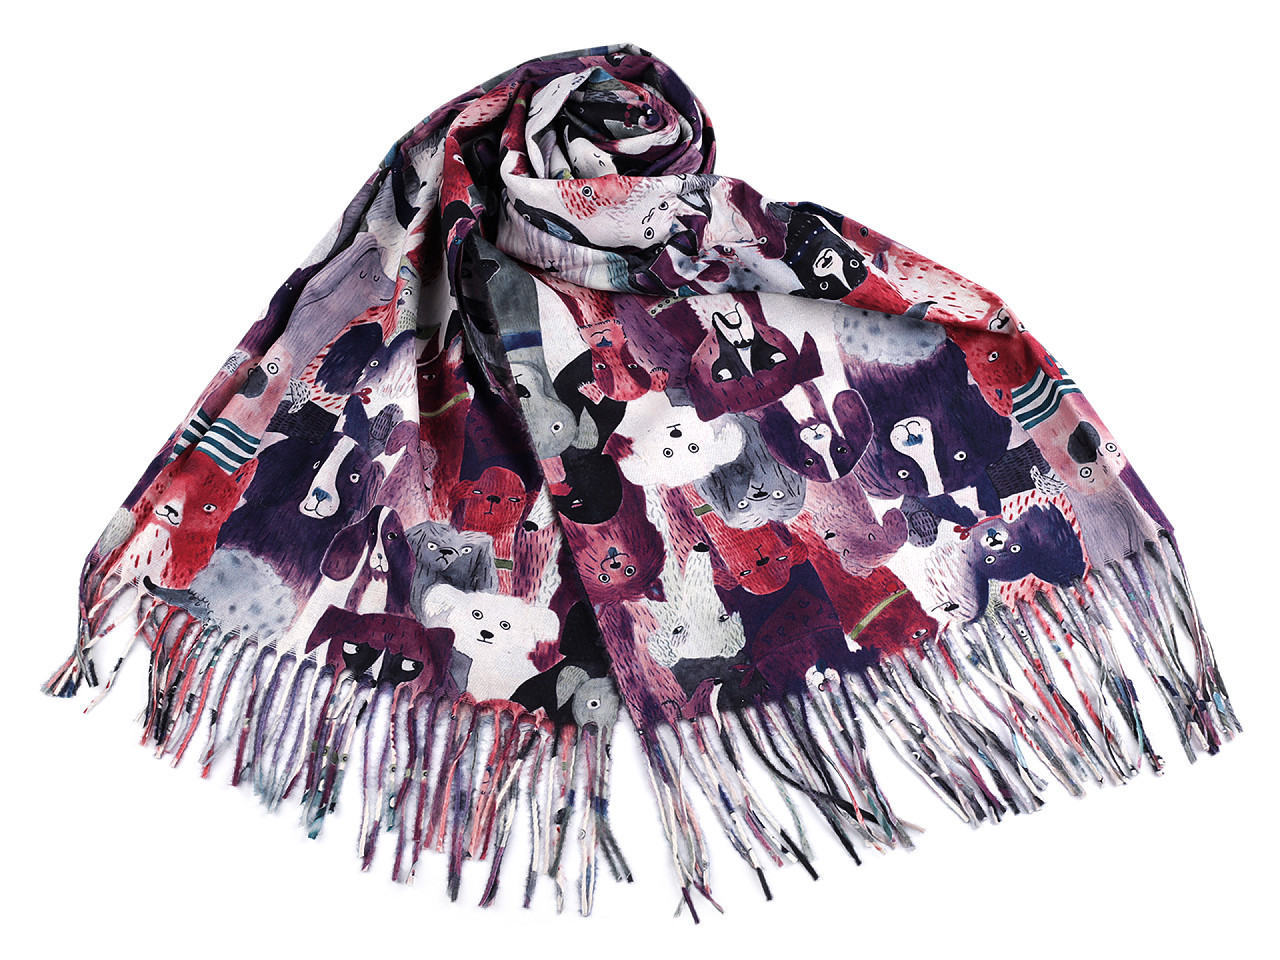 Šátek / šála typu kašmír s třásněmi, psi 70x180 cm, barva 9 fialová švestka